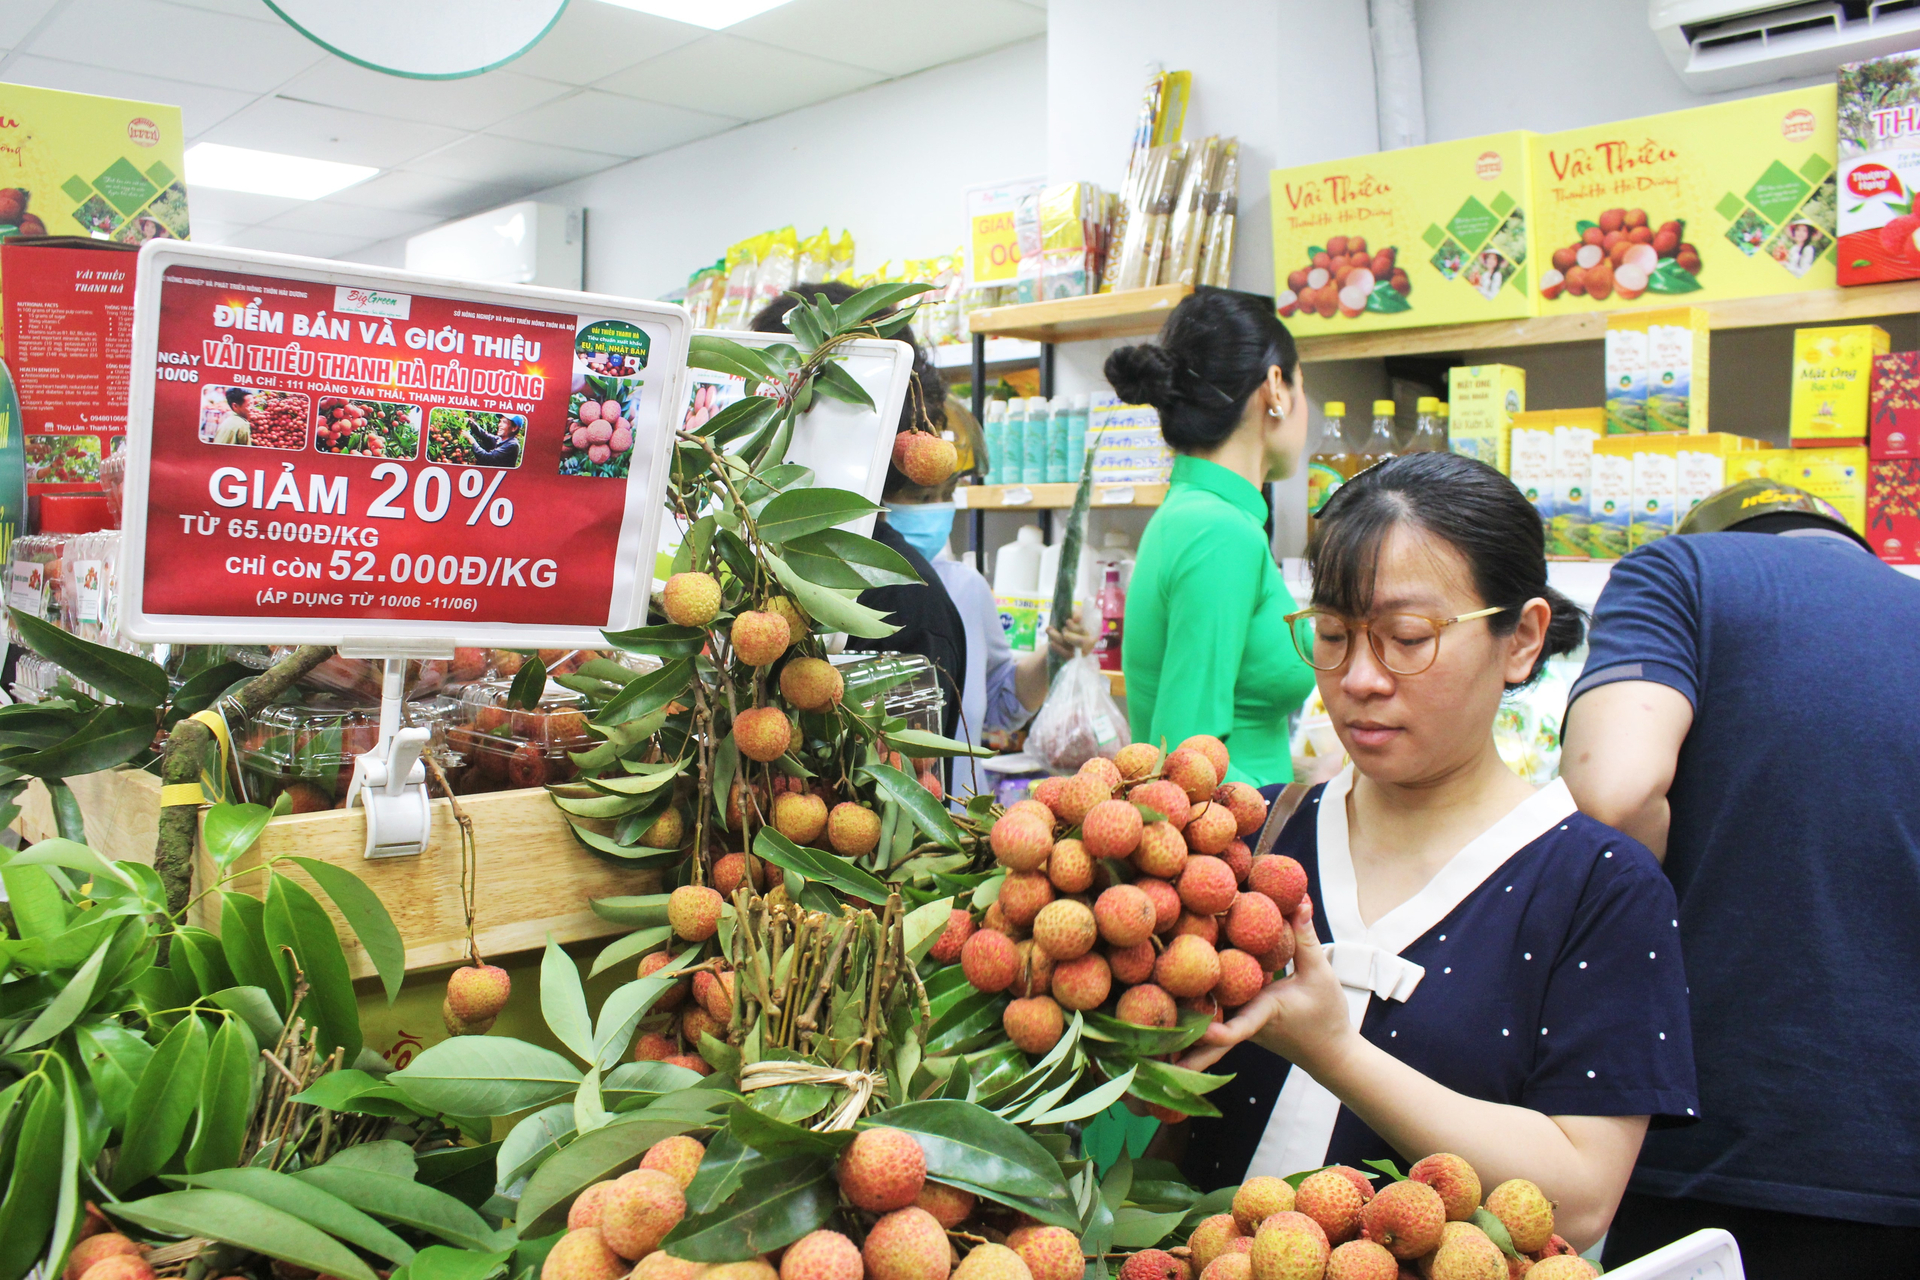 Từ sáng sớm, đông đảo người dân Thủ đô đã tới tham quan, ăn thử và mua vải thiều Thanh Hà tại cửa hàng trưng bày của Công ty Thực phẩm sạch Biggreen Việt Nam. Ảnh: Trung Quân.